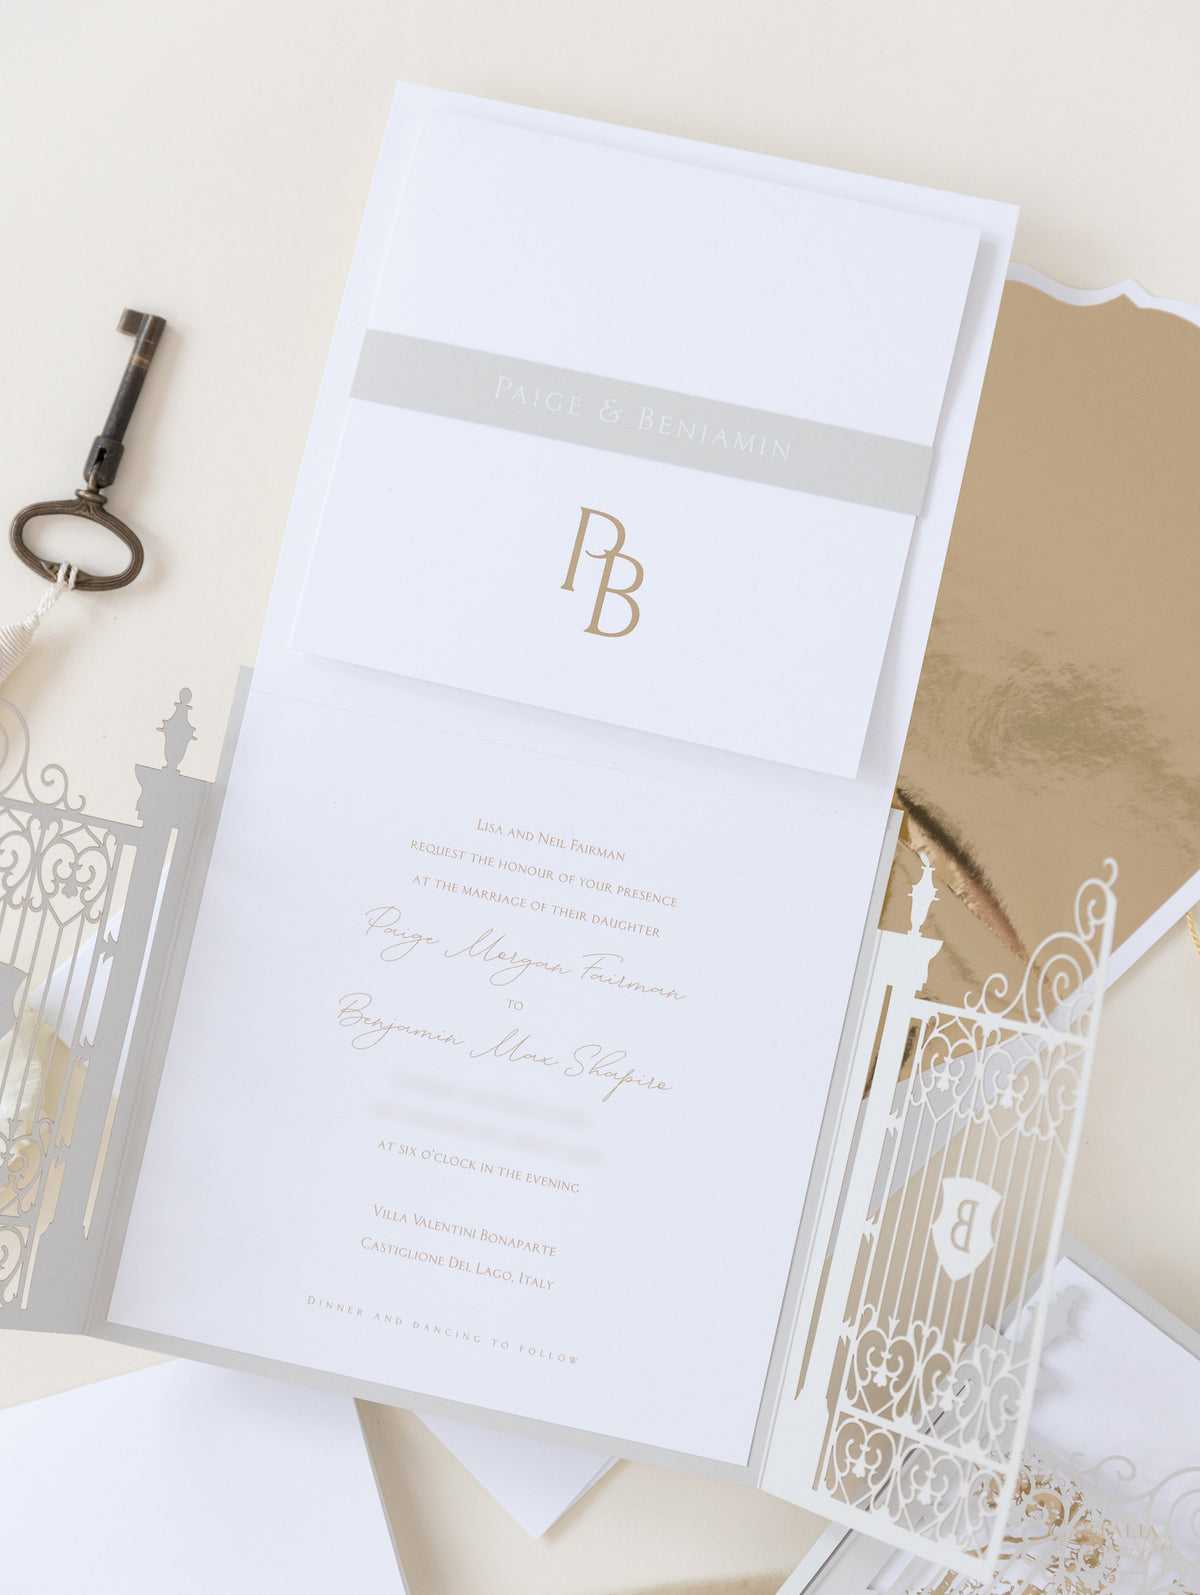 Villa Valentini Bonaparte | Invitación de boda frustrada con puerta ornamental | Comisión personalizada P&amp;B